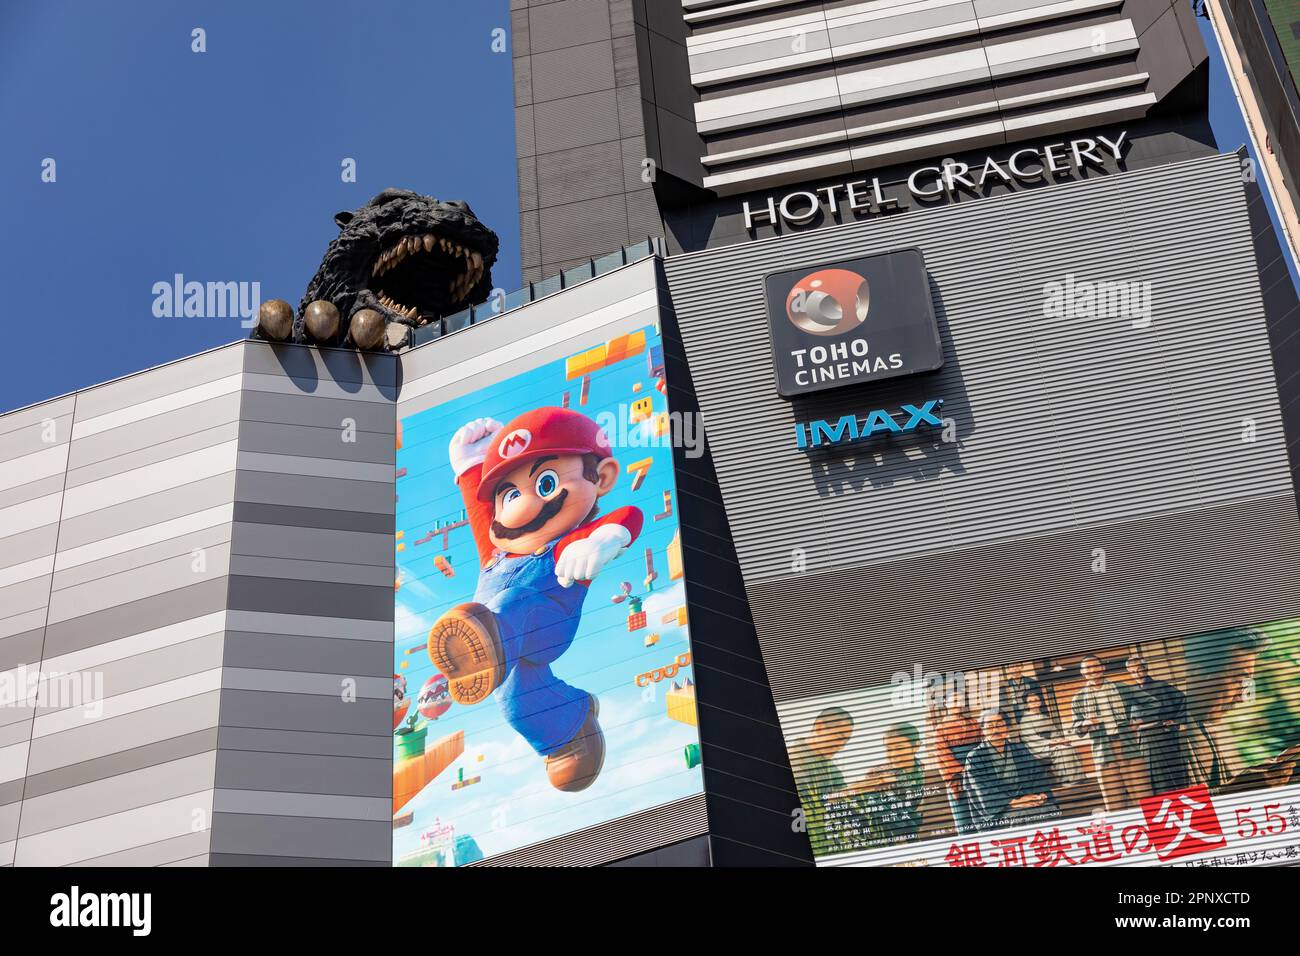 Hotel Gracery Godzilla avril 2023, Tokyo toho cinémas et super Mario publicité panneau, Shinjuku ville, Japon, Asie Banque D'Images